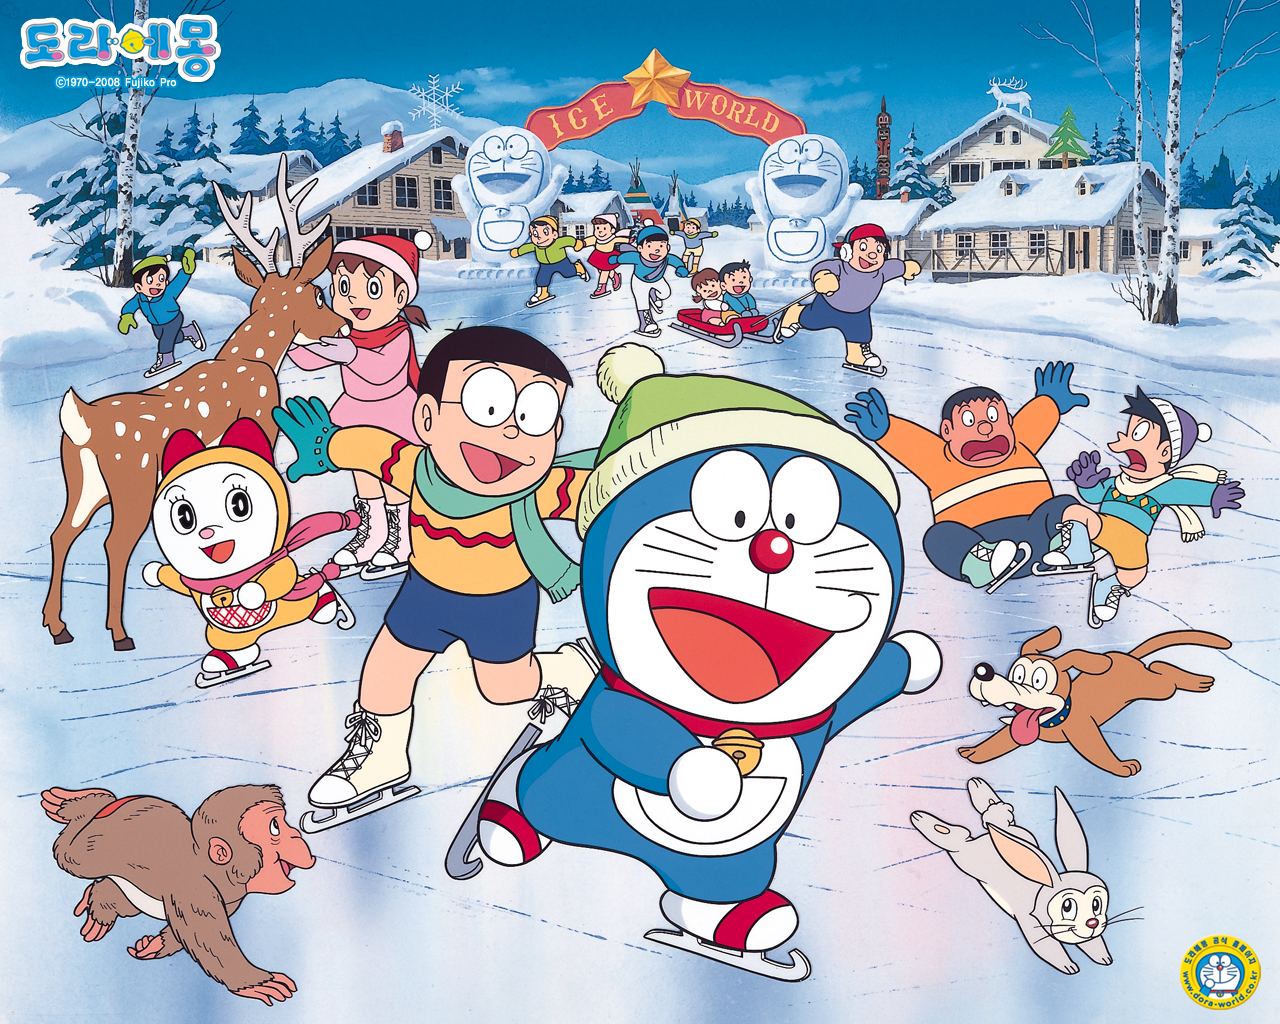 Doraemon hình ảnh: Với những hình ảnh vô cùng dễ thương của Doraemon, cùng những trò chơi thú vị, bạn sẽ không khỏi cảm thấy hứng thú và sống động hơn bao giờ hết. Chắc chắn bạn sẽ không muốn bỏ qua bất kỳ hình ảnh Doraemon nào đấy!